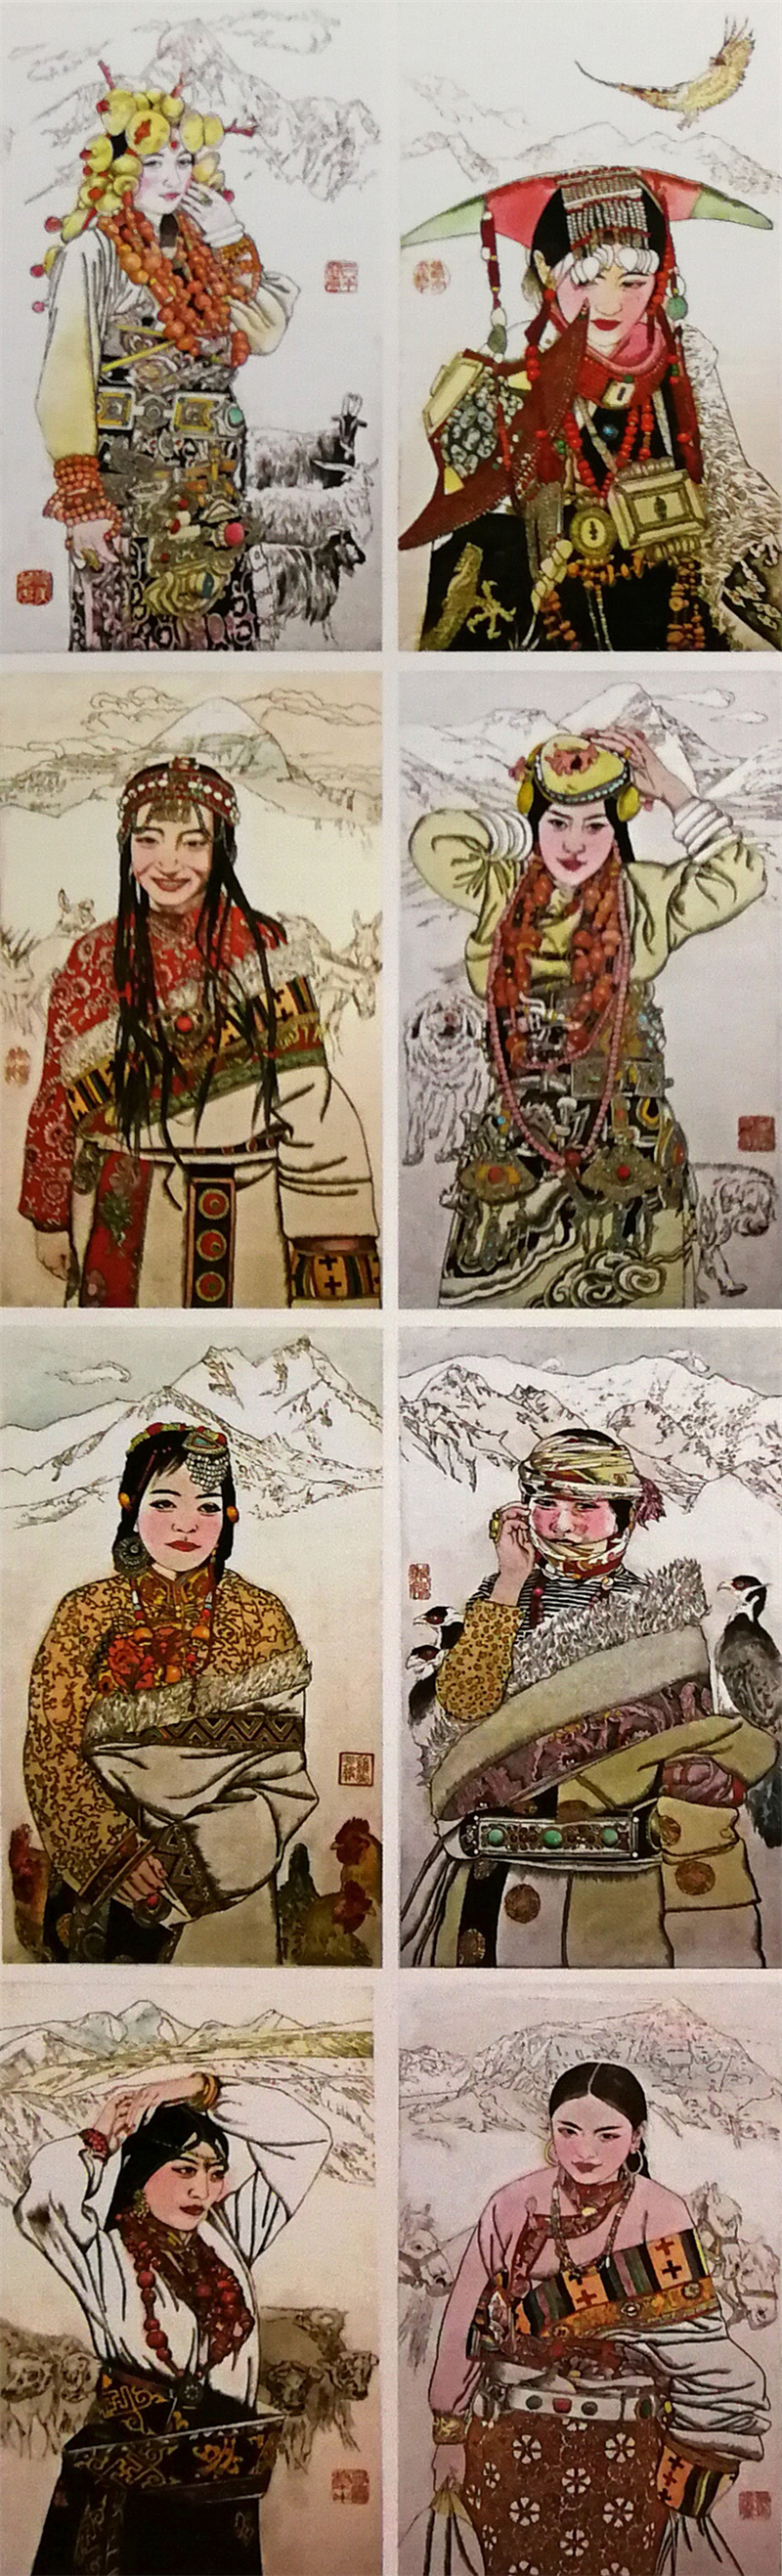 《俊美的藏族姑娘》凹版手彩 180×55cm 全国二十一届版画展